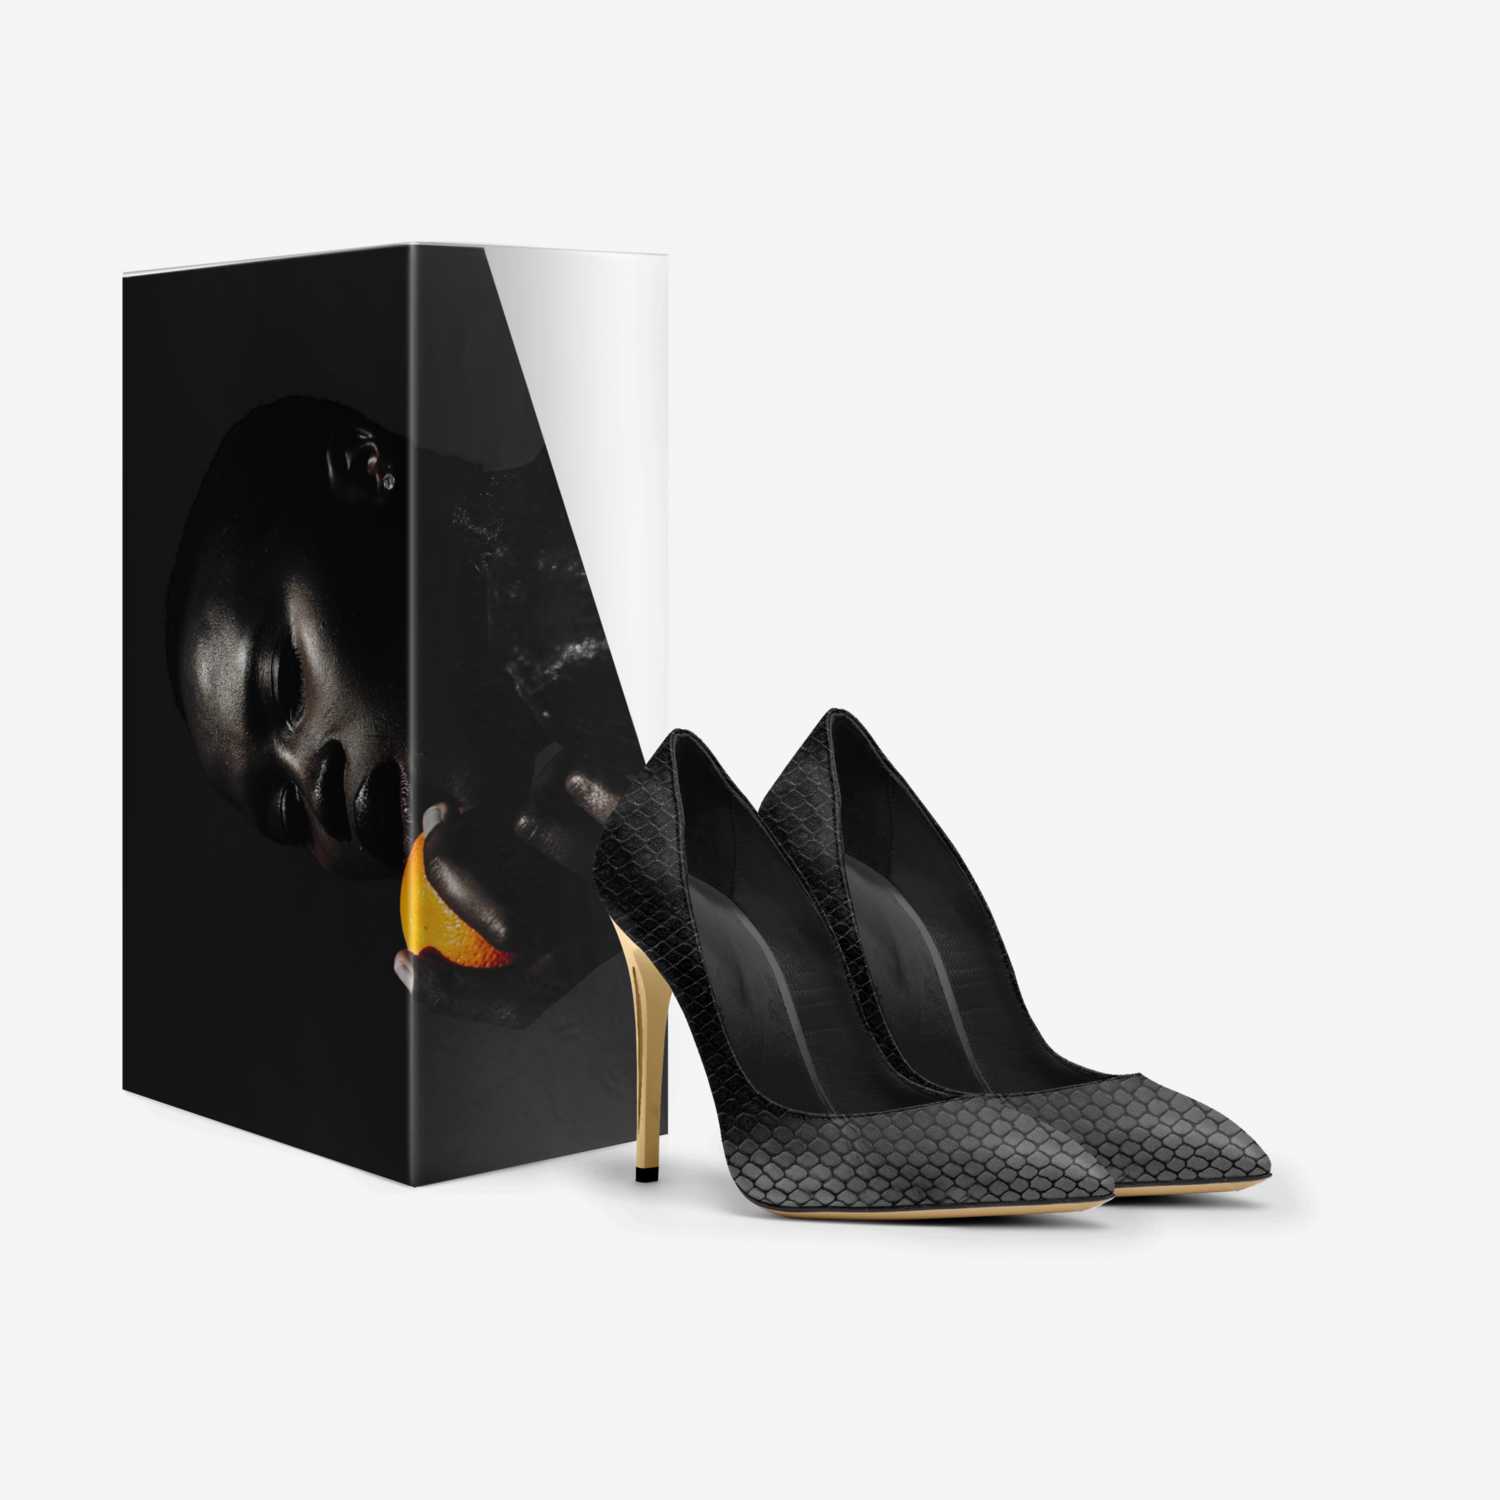 GENTLEMEN BRAND  custom made in Italy shoes by Kareem Rush | Box view